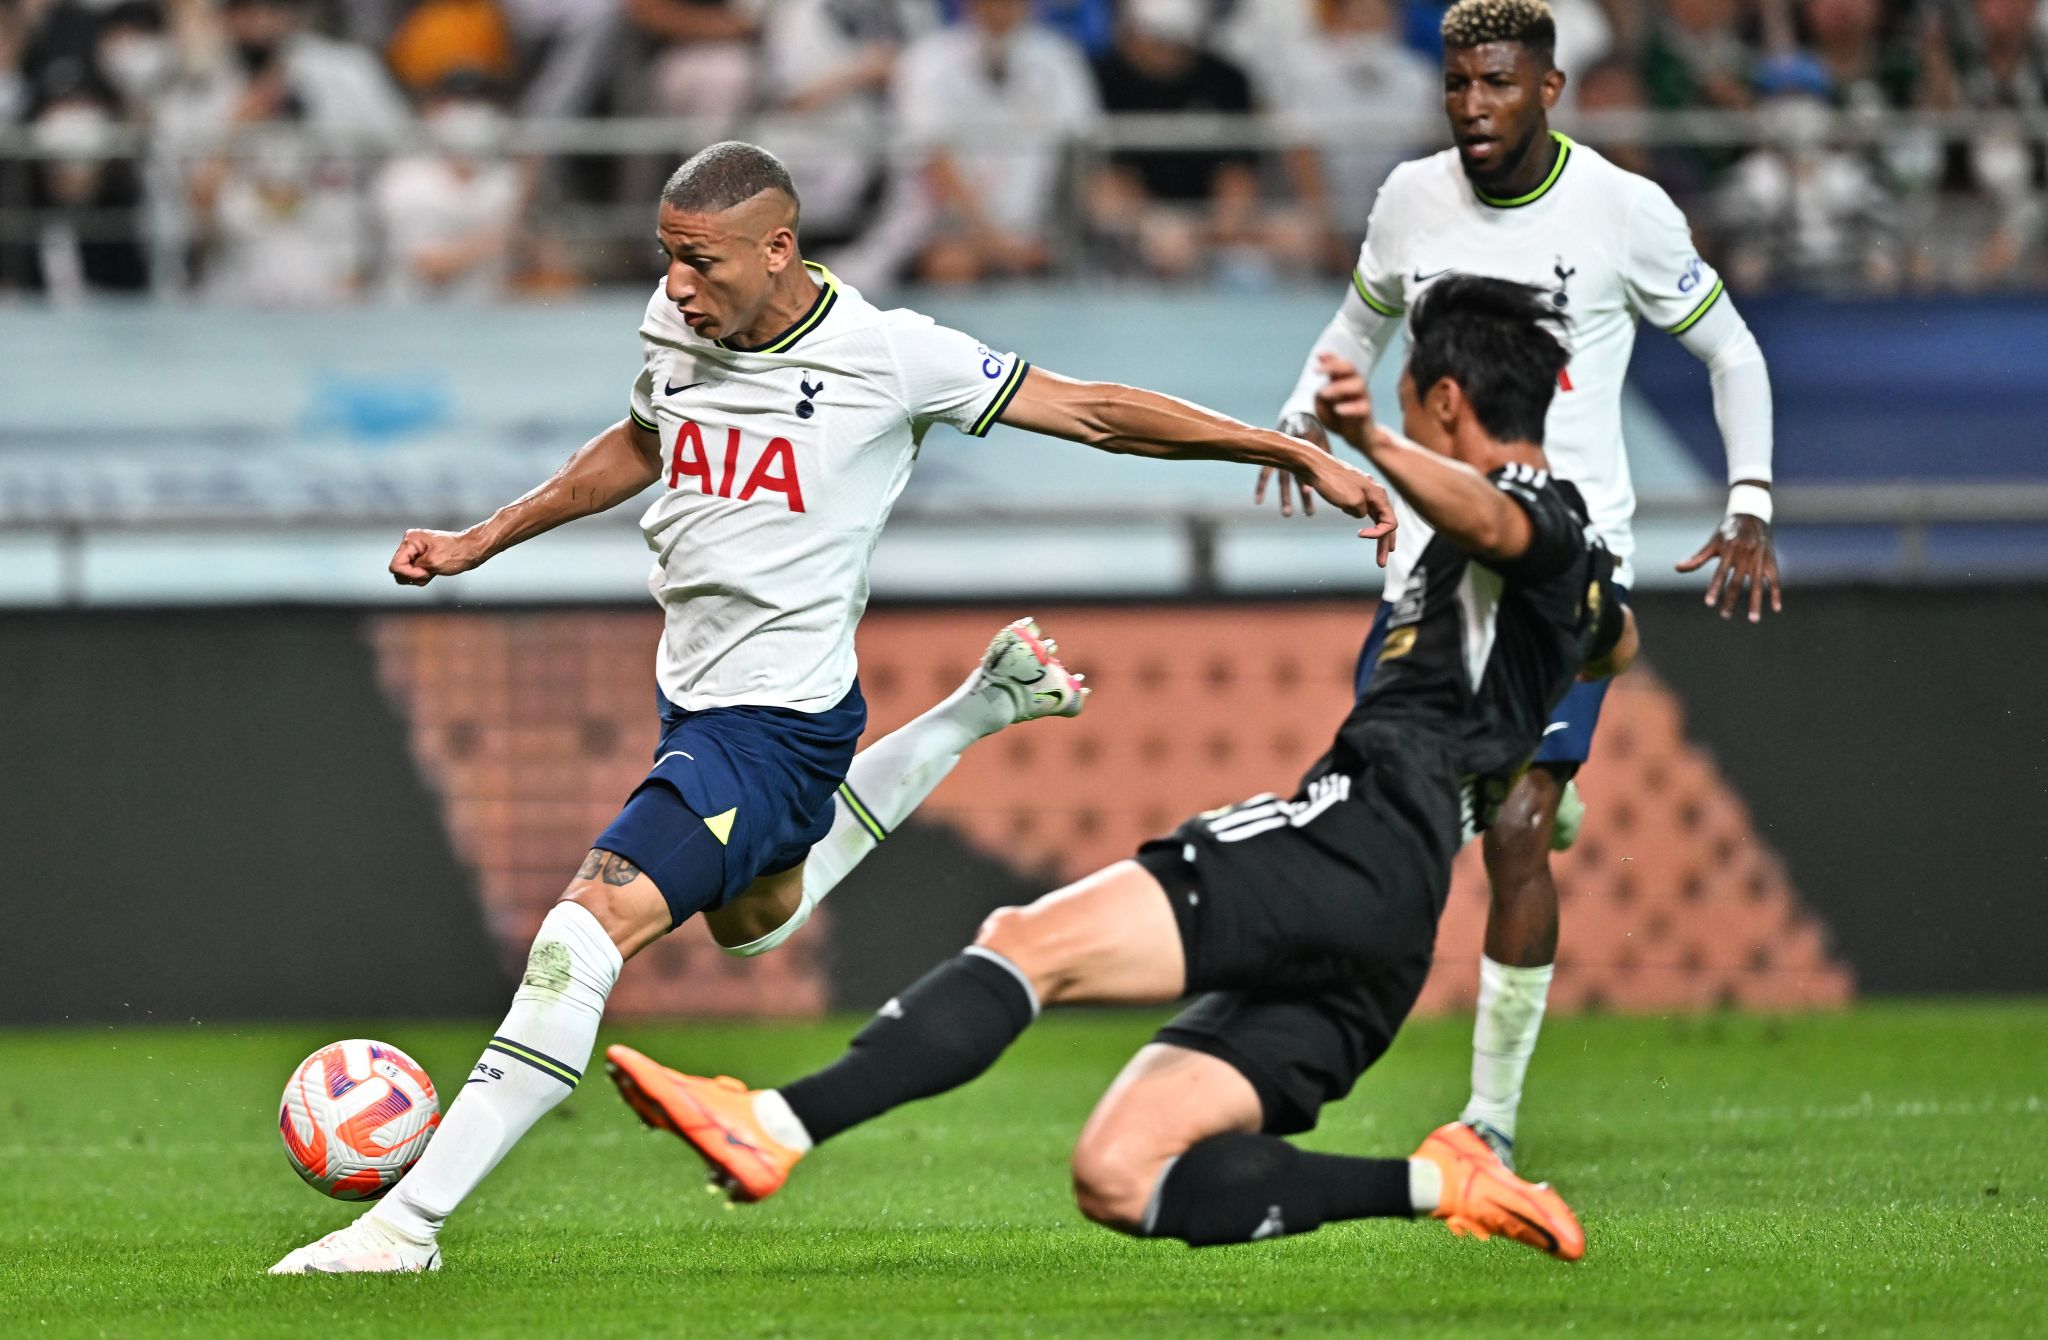 Pre-Season Friendlies Highlights 2022: Tottenham Hotspur beat Team K-League 6-3 in first Pre-Season friendly, Heung-min Son scores a brace, Check Spurs beat K League HIGHLIGHTS